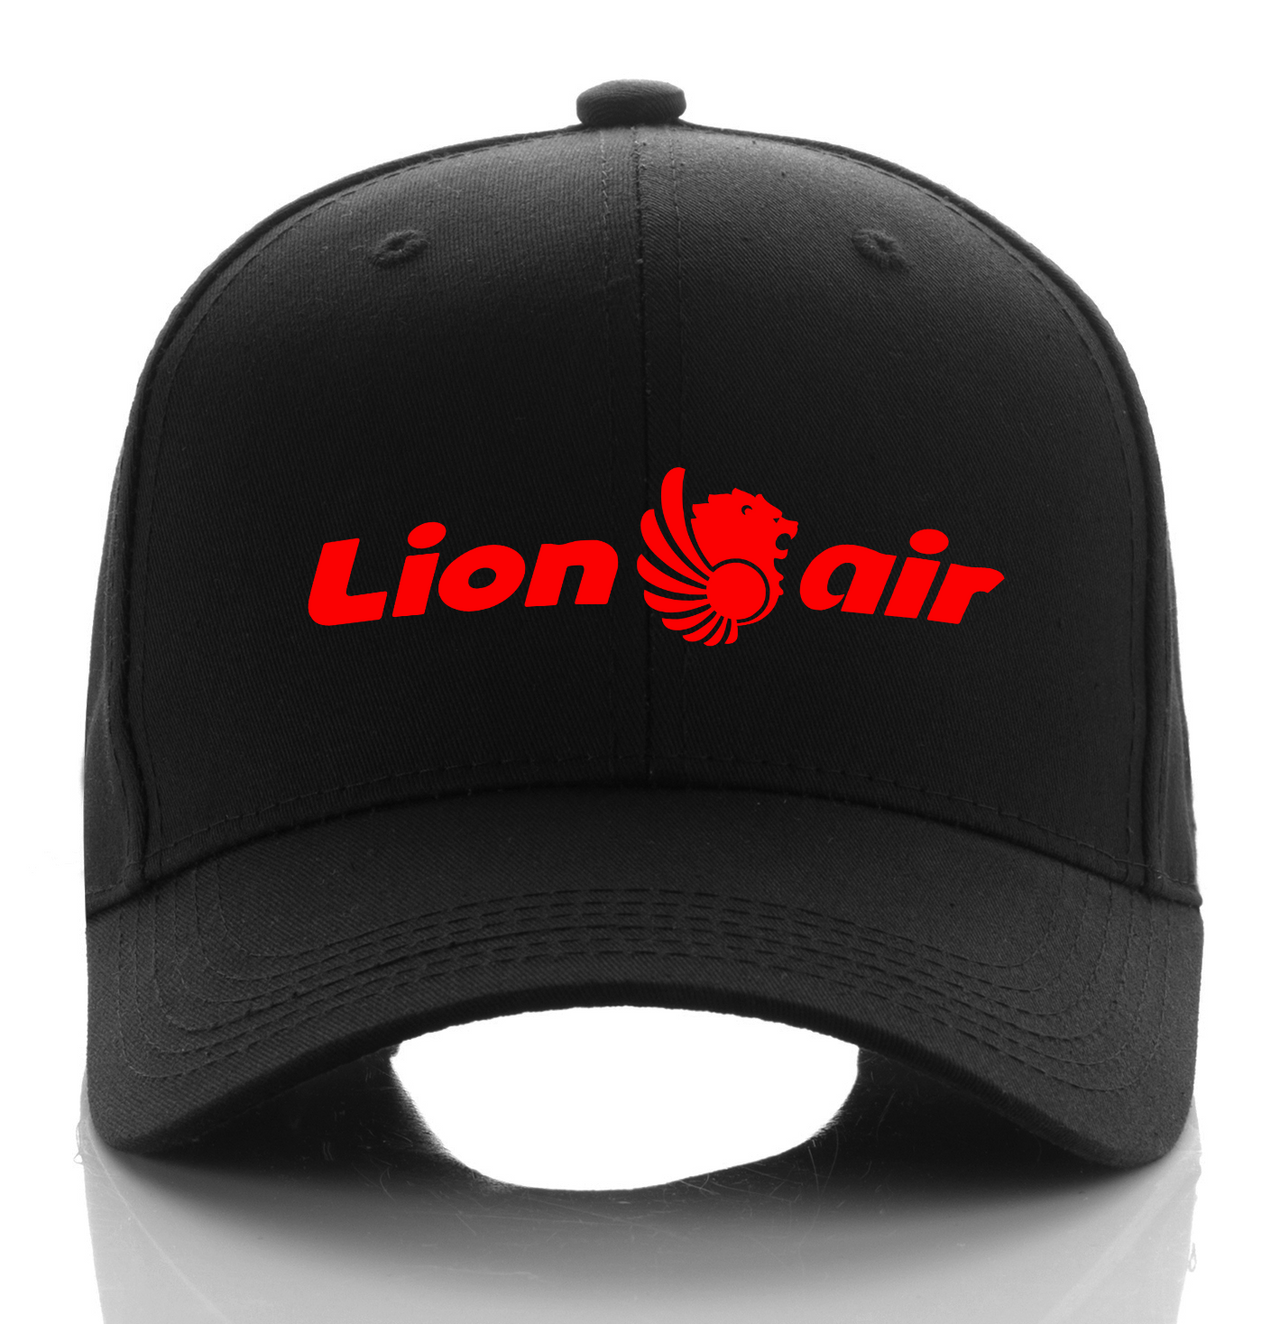 LION AIRLINE DESIGNED CAP